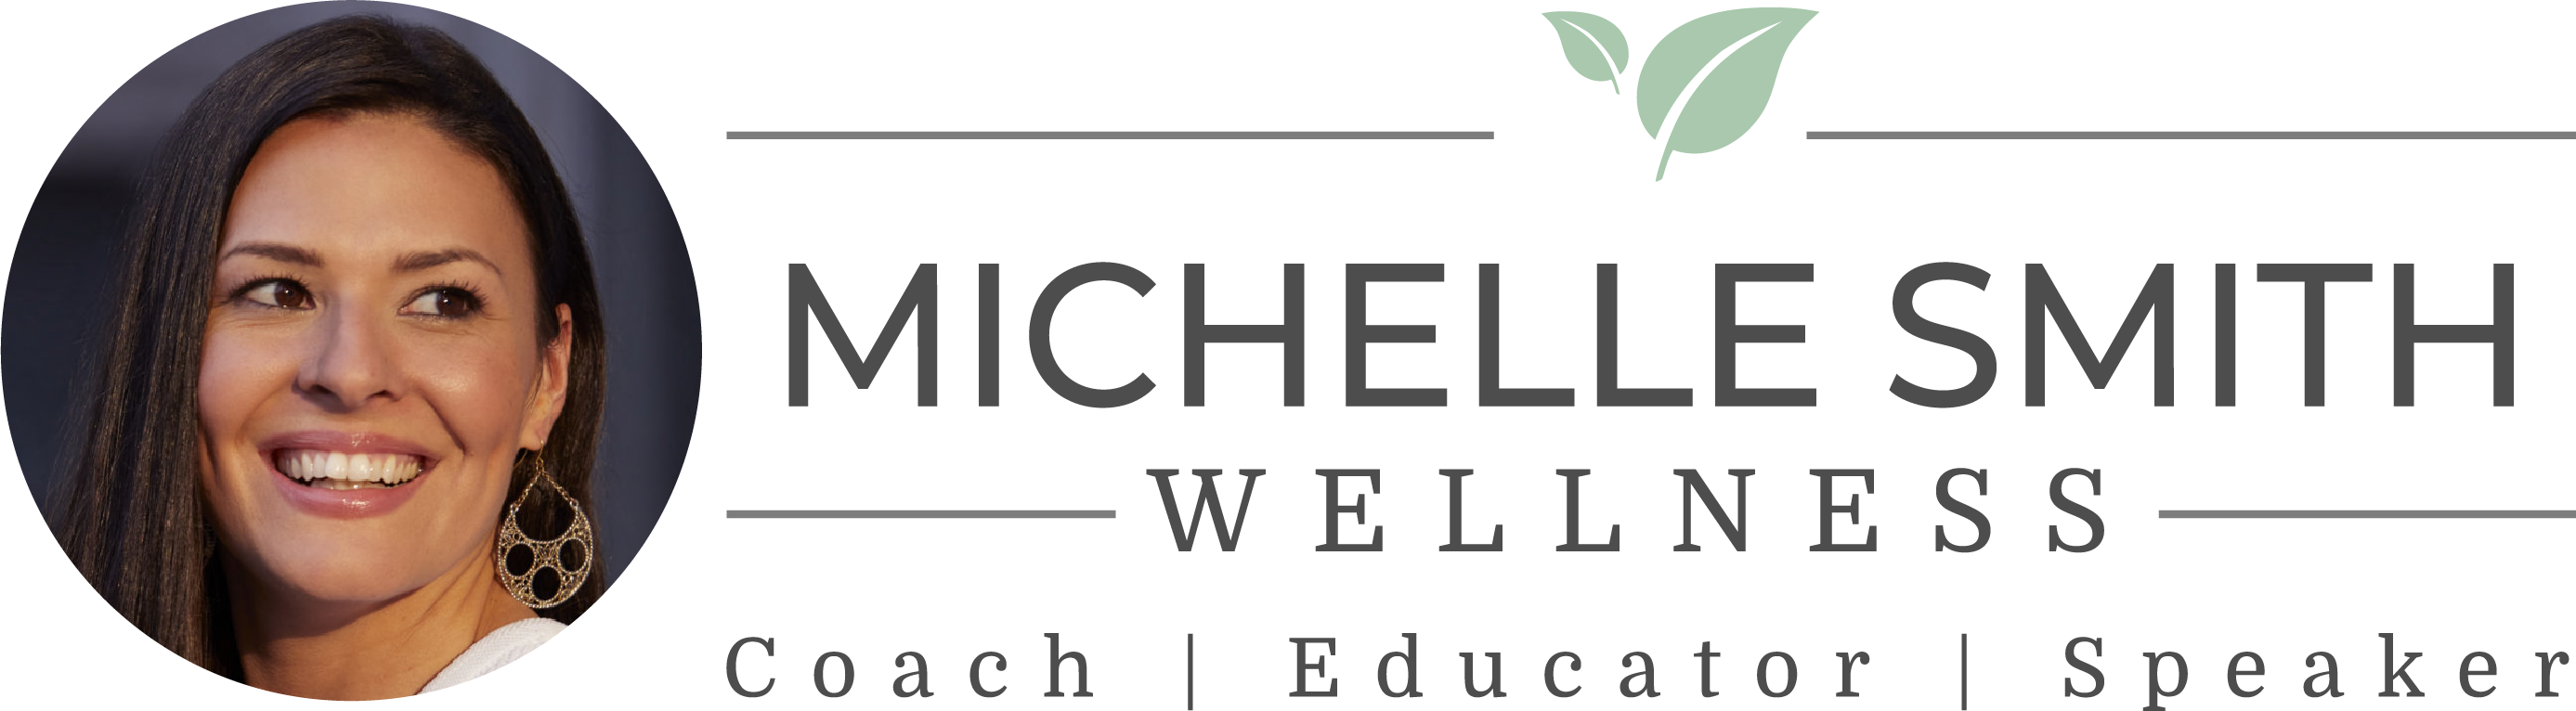 Michelle Smith Wellness